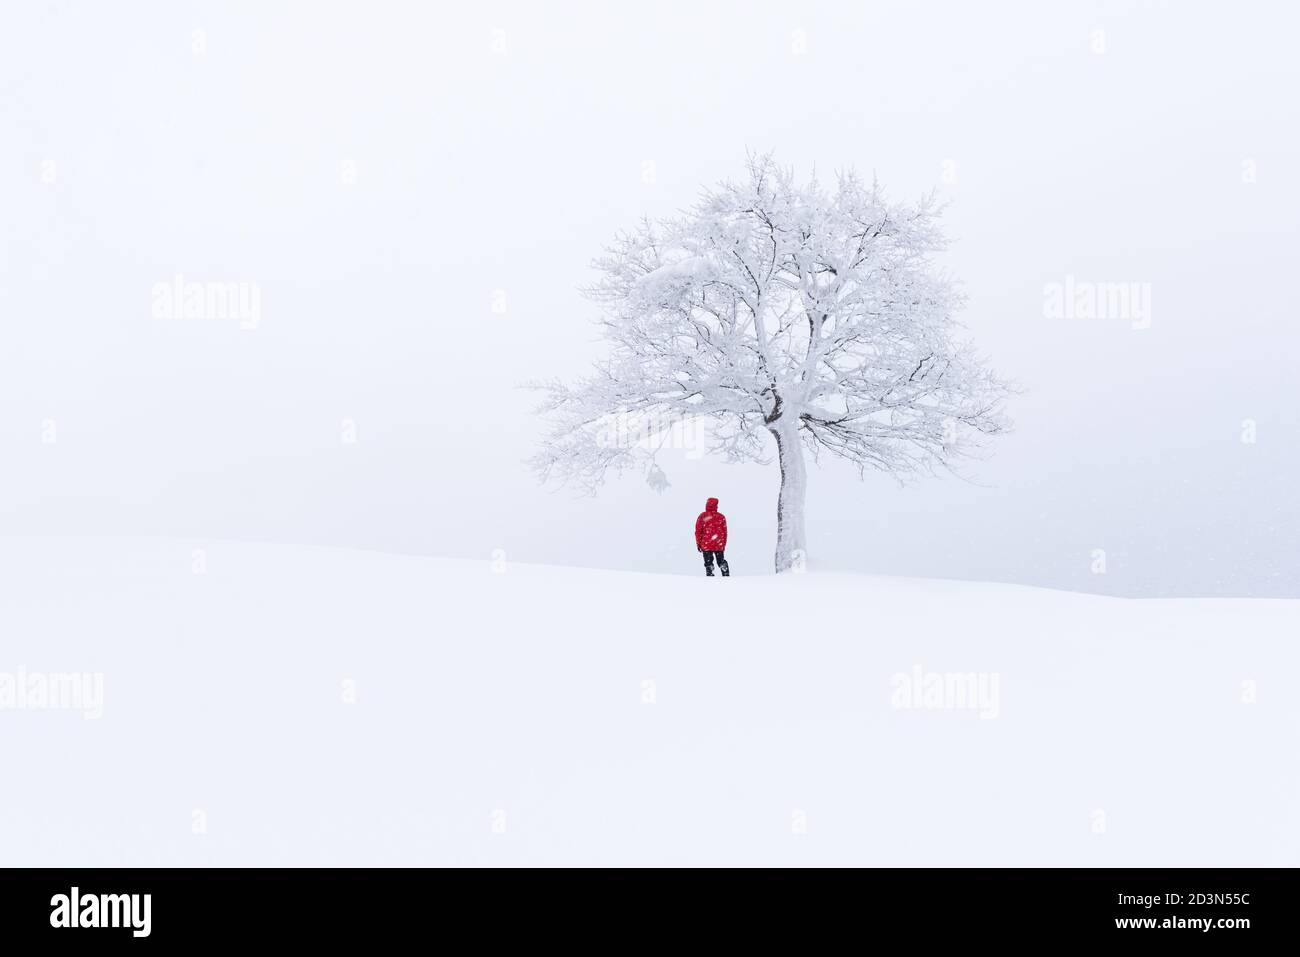 Fantastische Landschaft mit einem einsamen verschneiten Baum im Winter. Minimalistischer Szene in trüben und nebligen Wetter Stockfoto